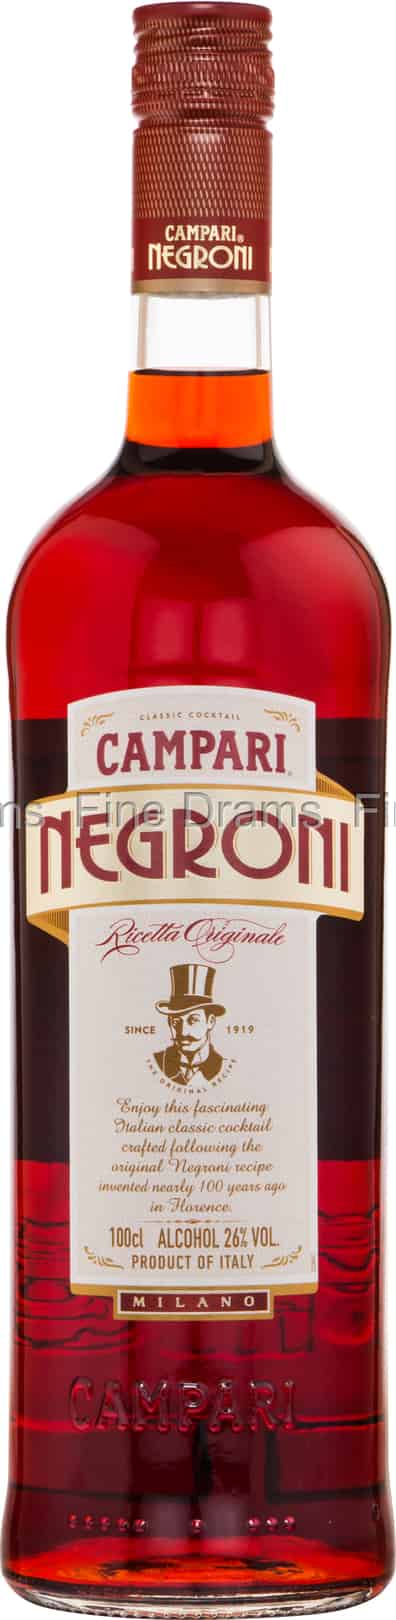 Campari Negroni (1 Liter)